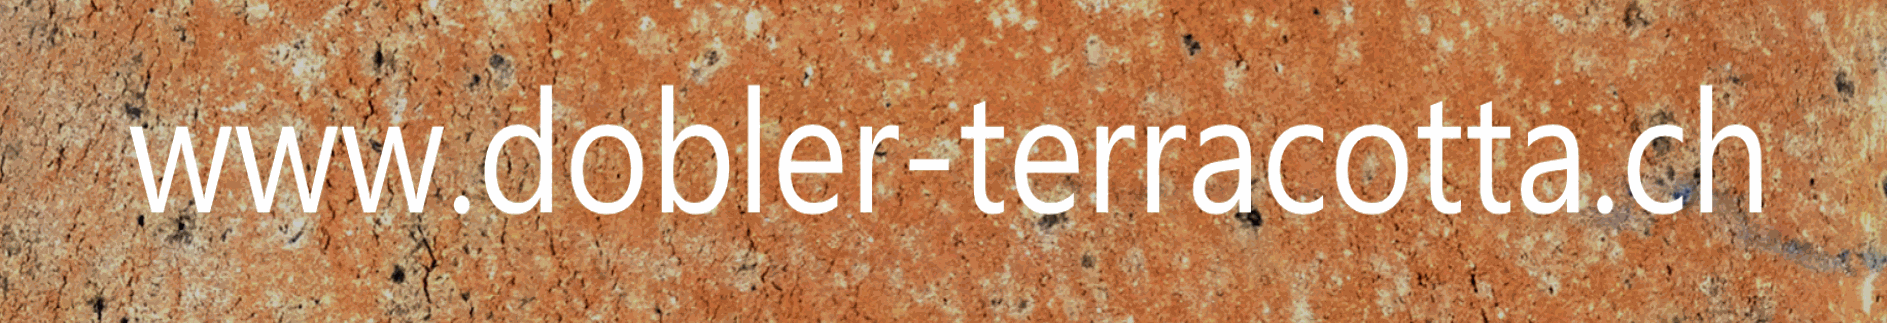 Gärtnerei Dobler-Terracotta Logo